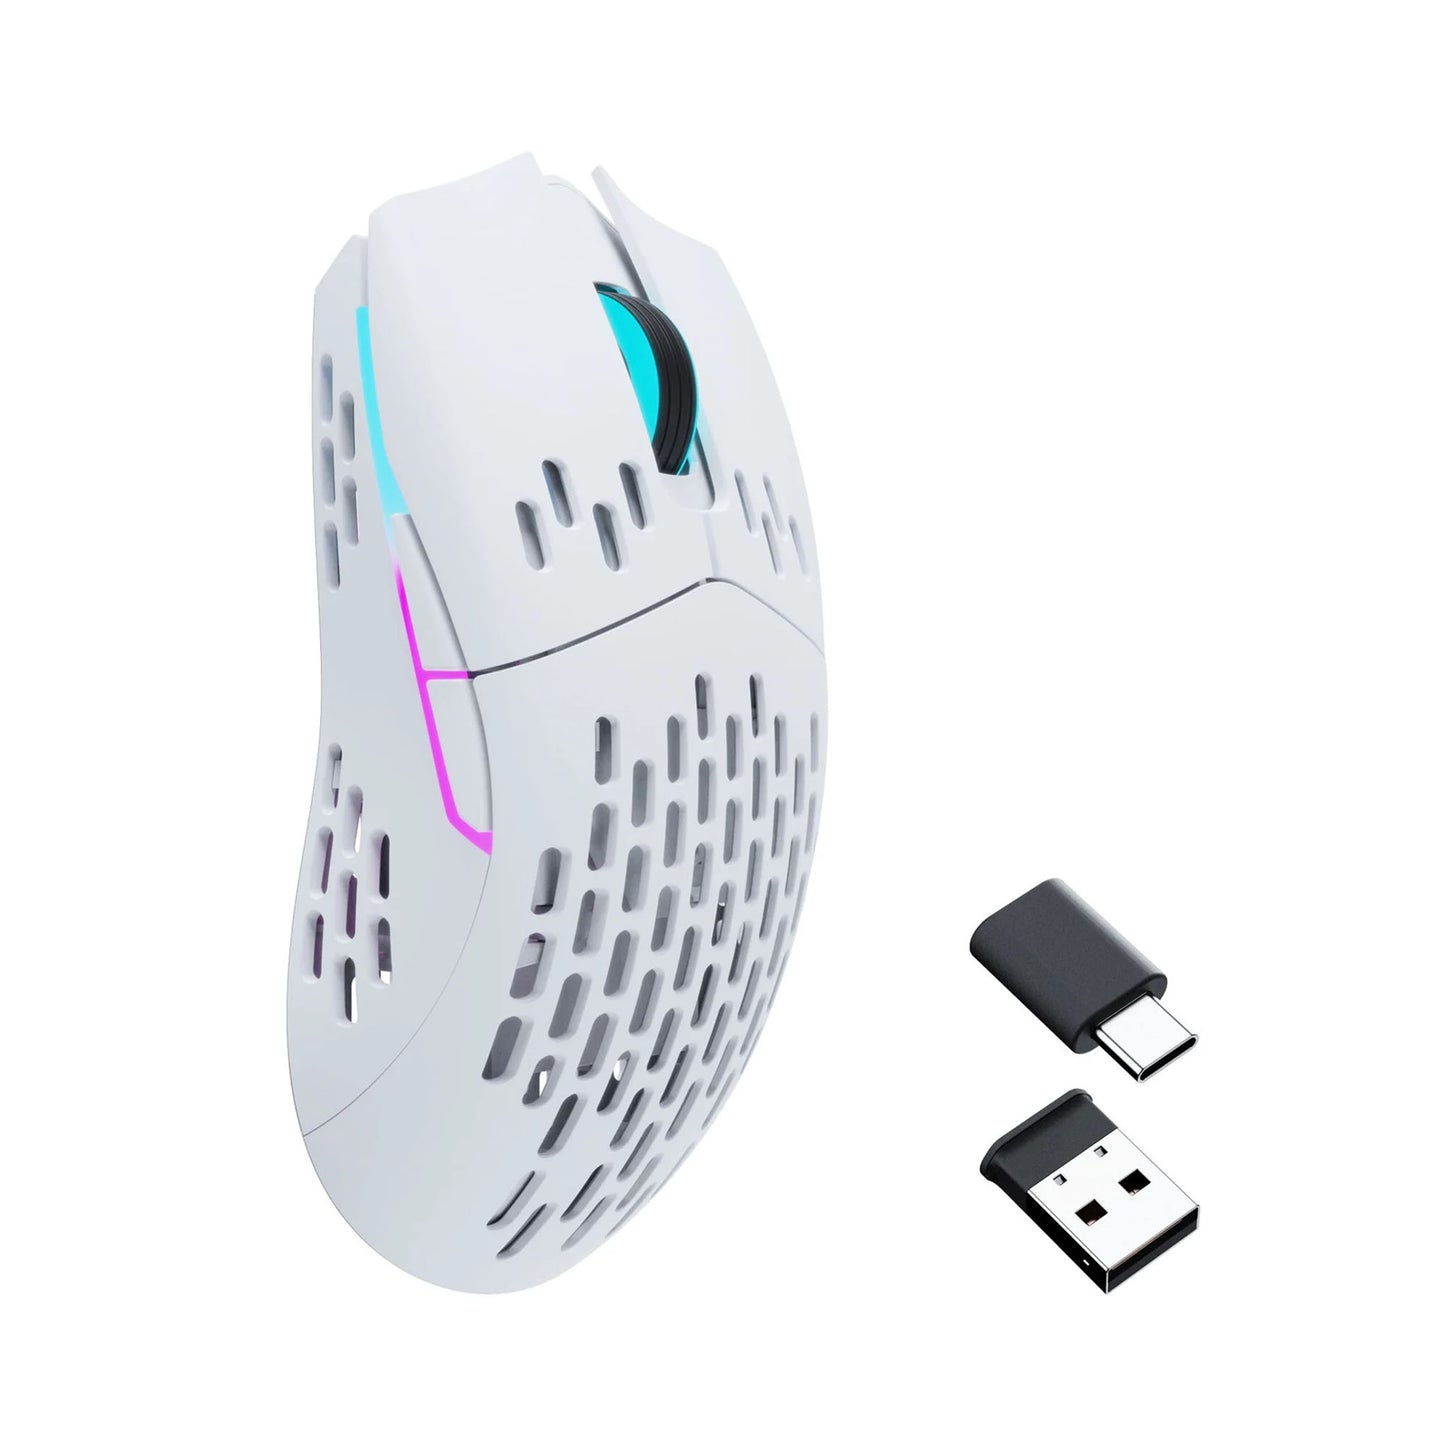 KEYCHRON M1 Wireless Mouse - White